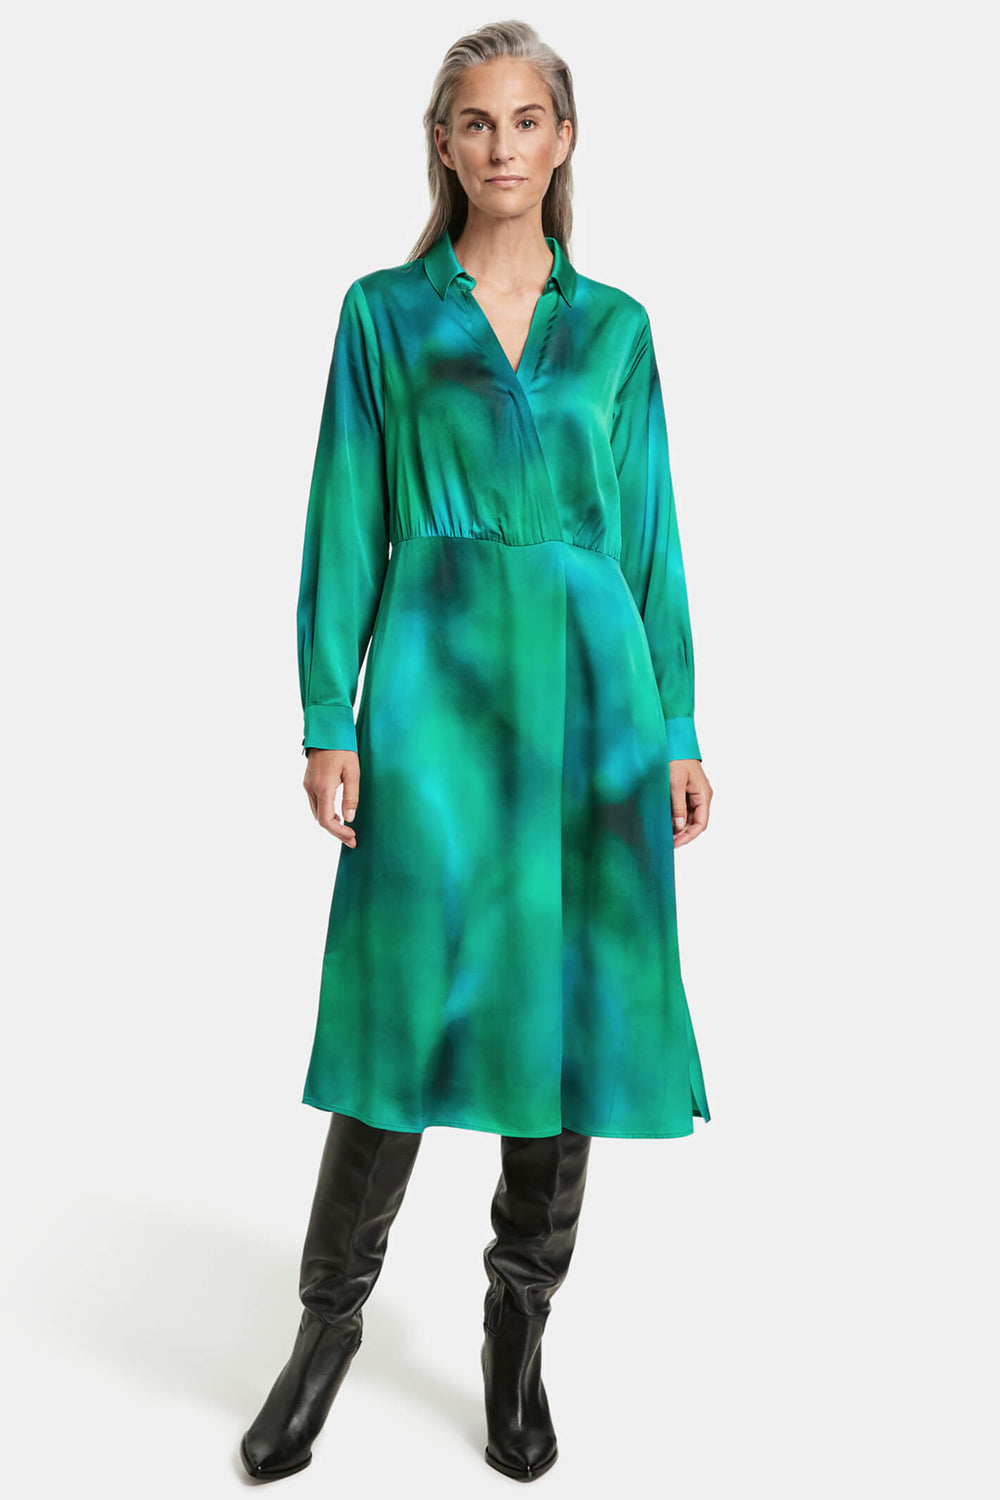 Gerry Weber 280029 Green Print Shirt Dress - Experience Boutique